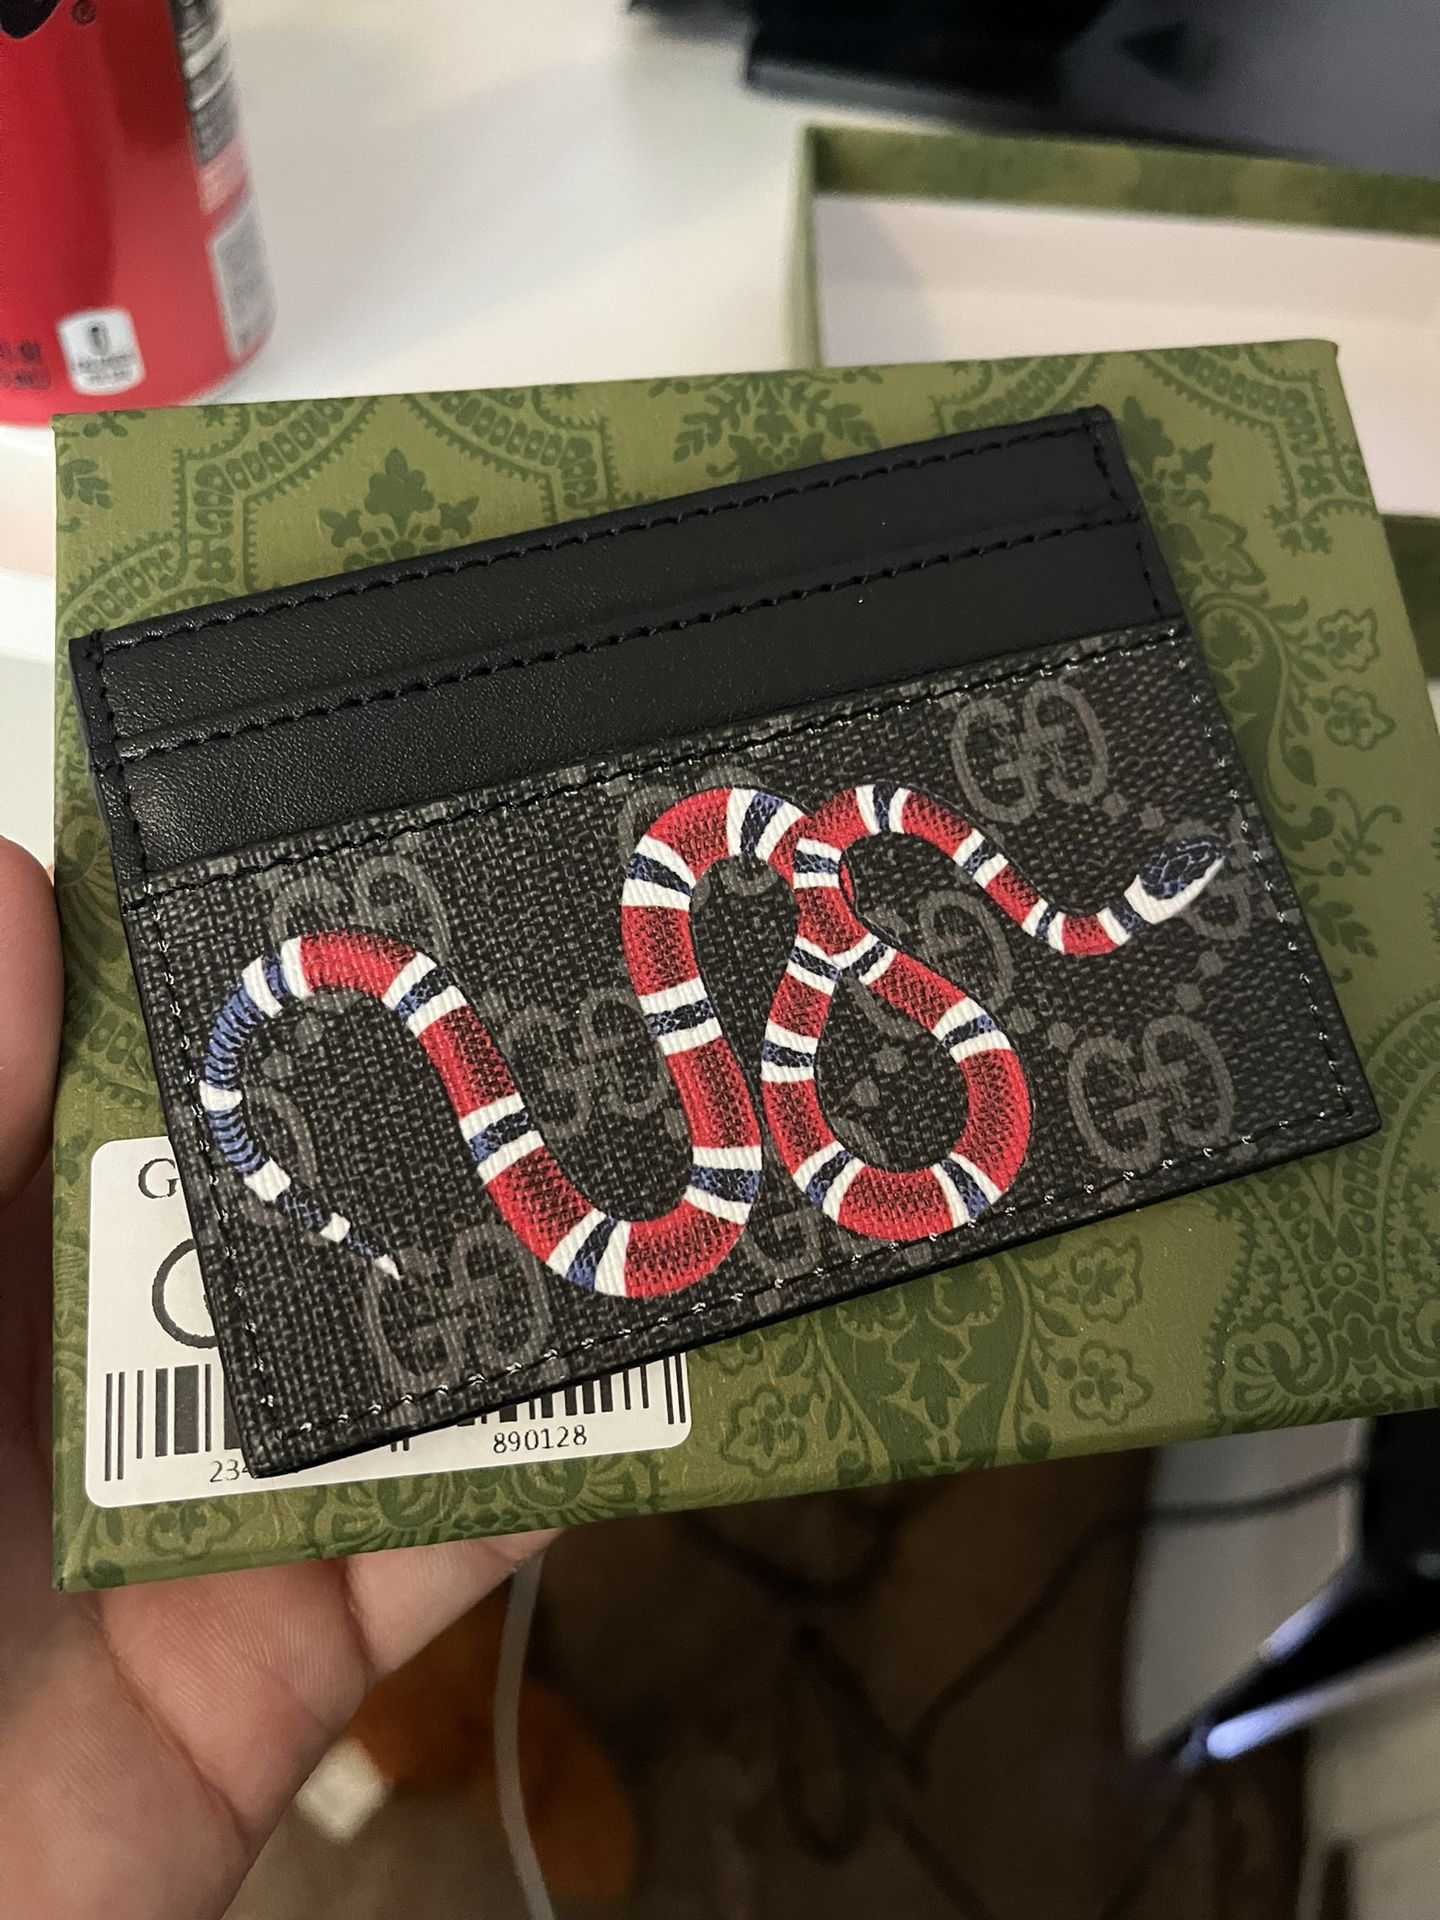 Gucci Wallet